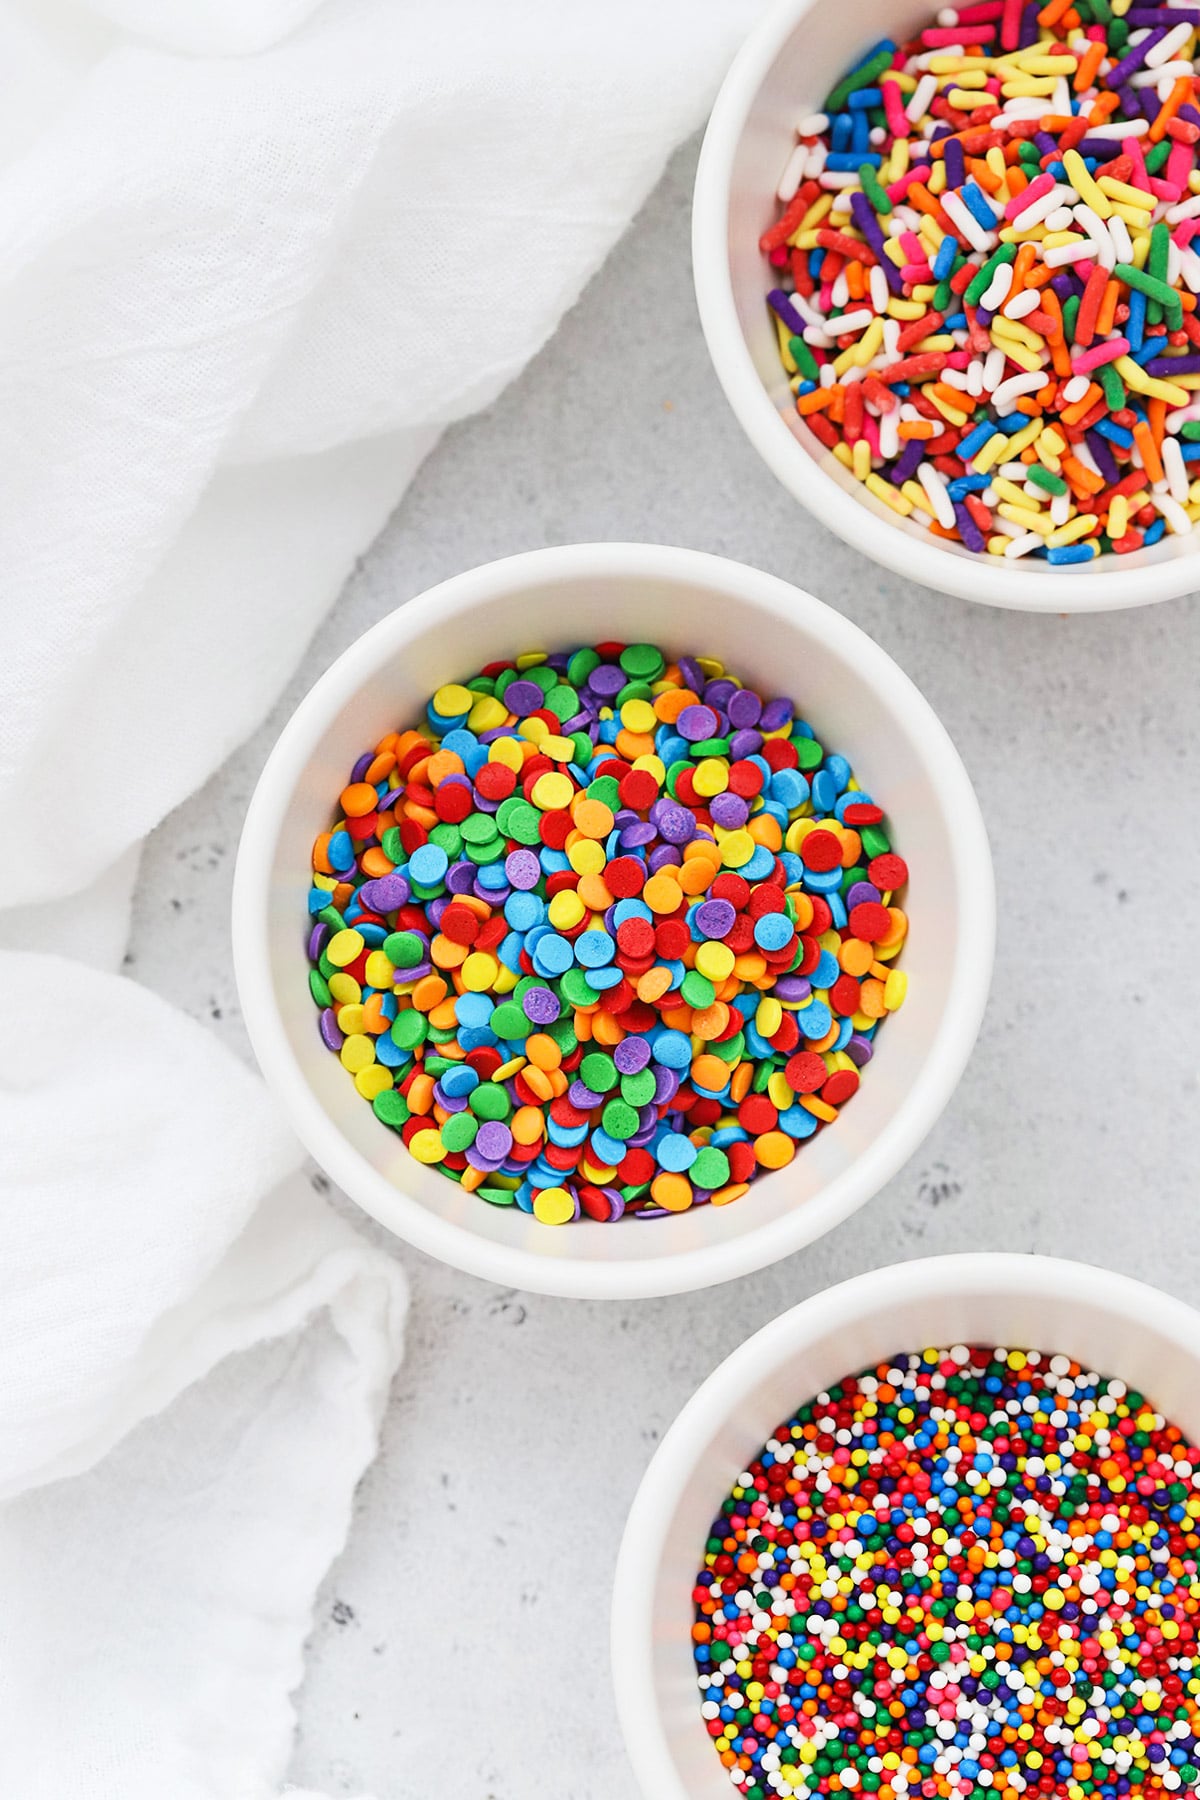 Sprinkles 101: Types Of Sprinkles, Uses & More!